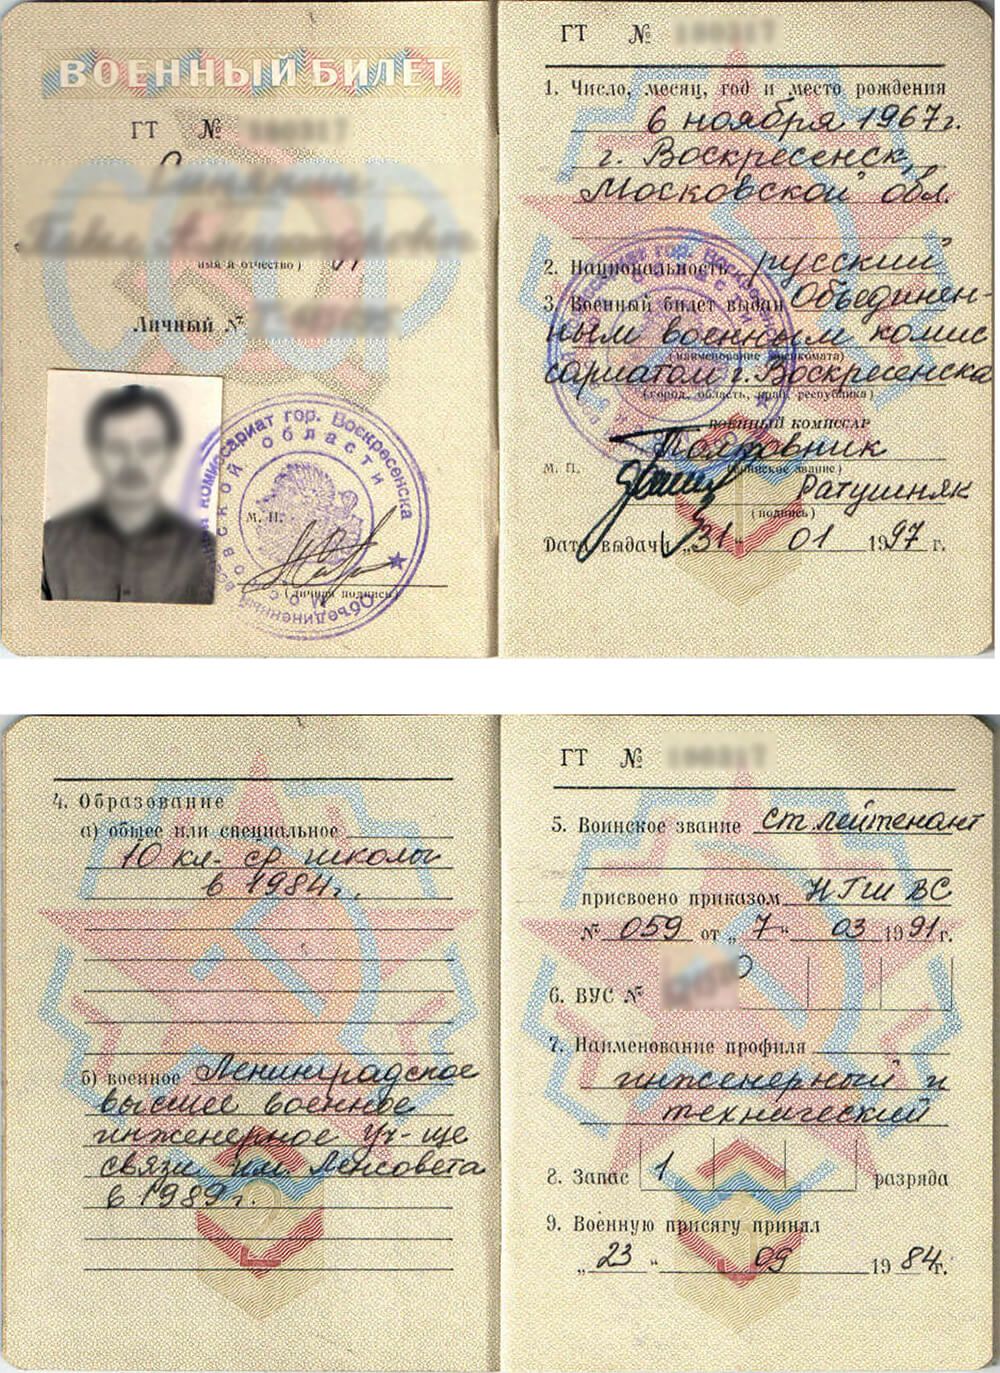 Два разворота военного билета, полученные для перевода